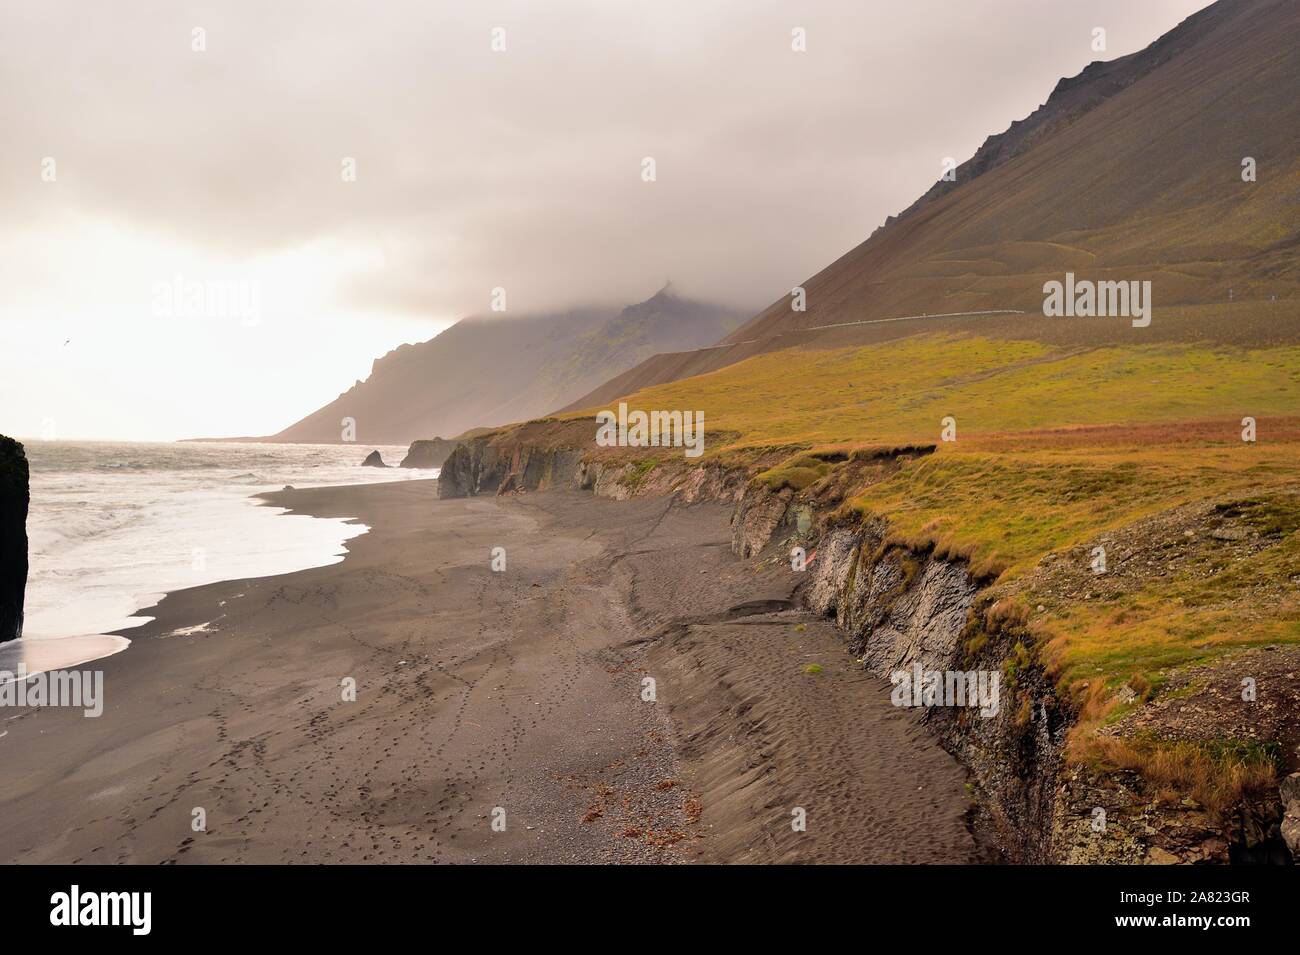 Oriente fiordi, Islanda. Rocce e spiagge di sabbia nera formata da attività vulcanica sono spruzzati in Islanda Fiordi Orientali. Foto Stock